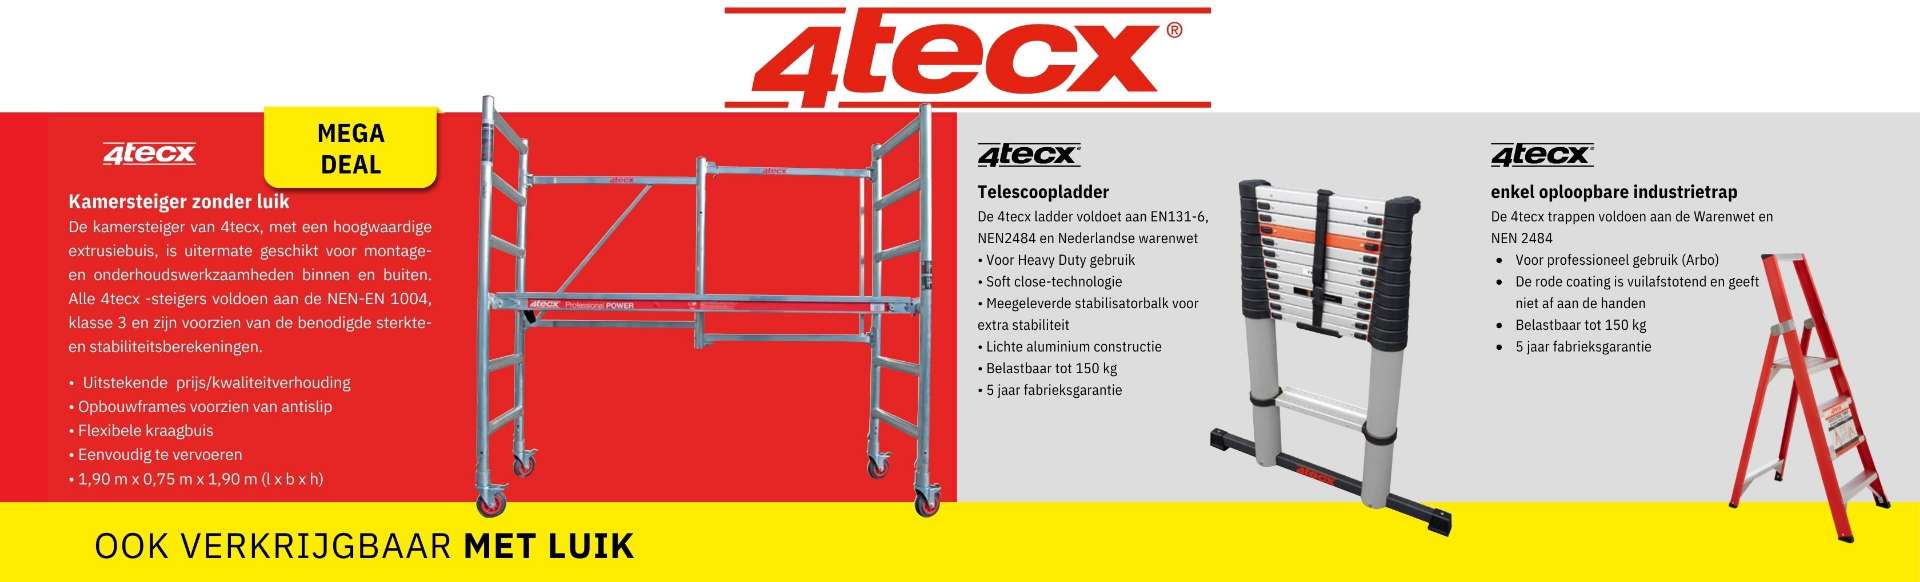 4tecx_ladders_trappen_steigers